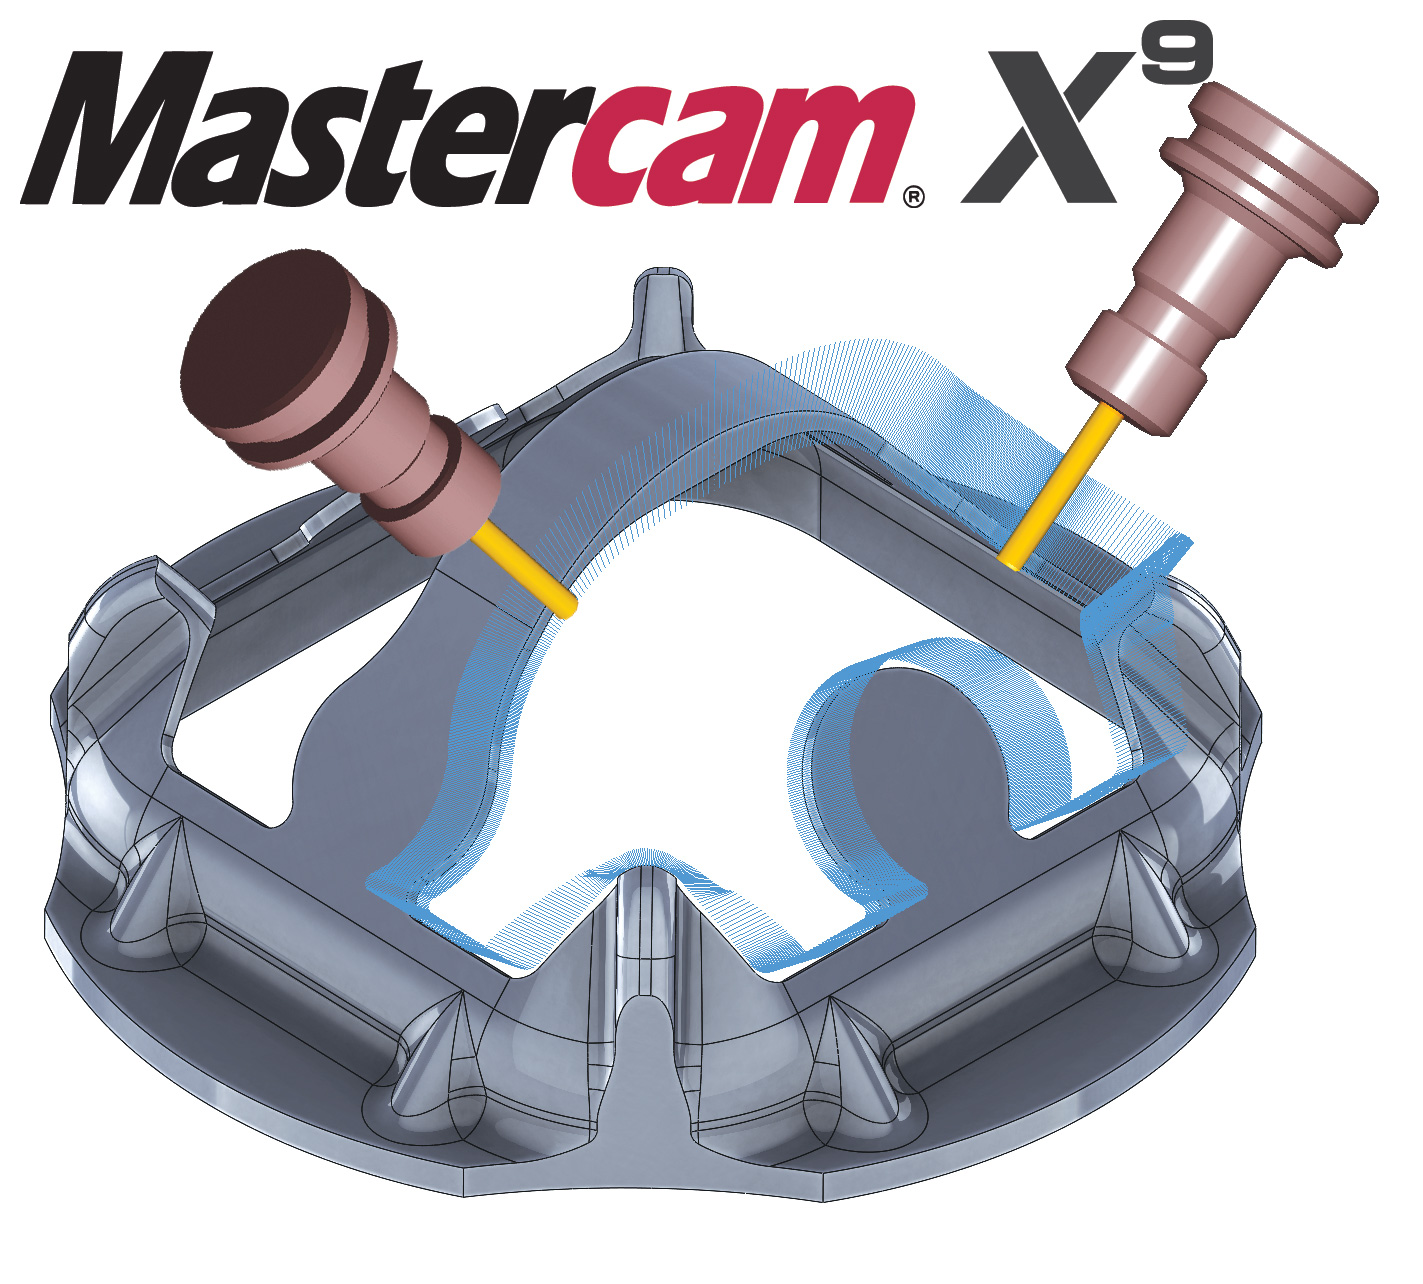 mastercam x9 hasp crack